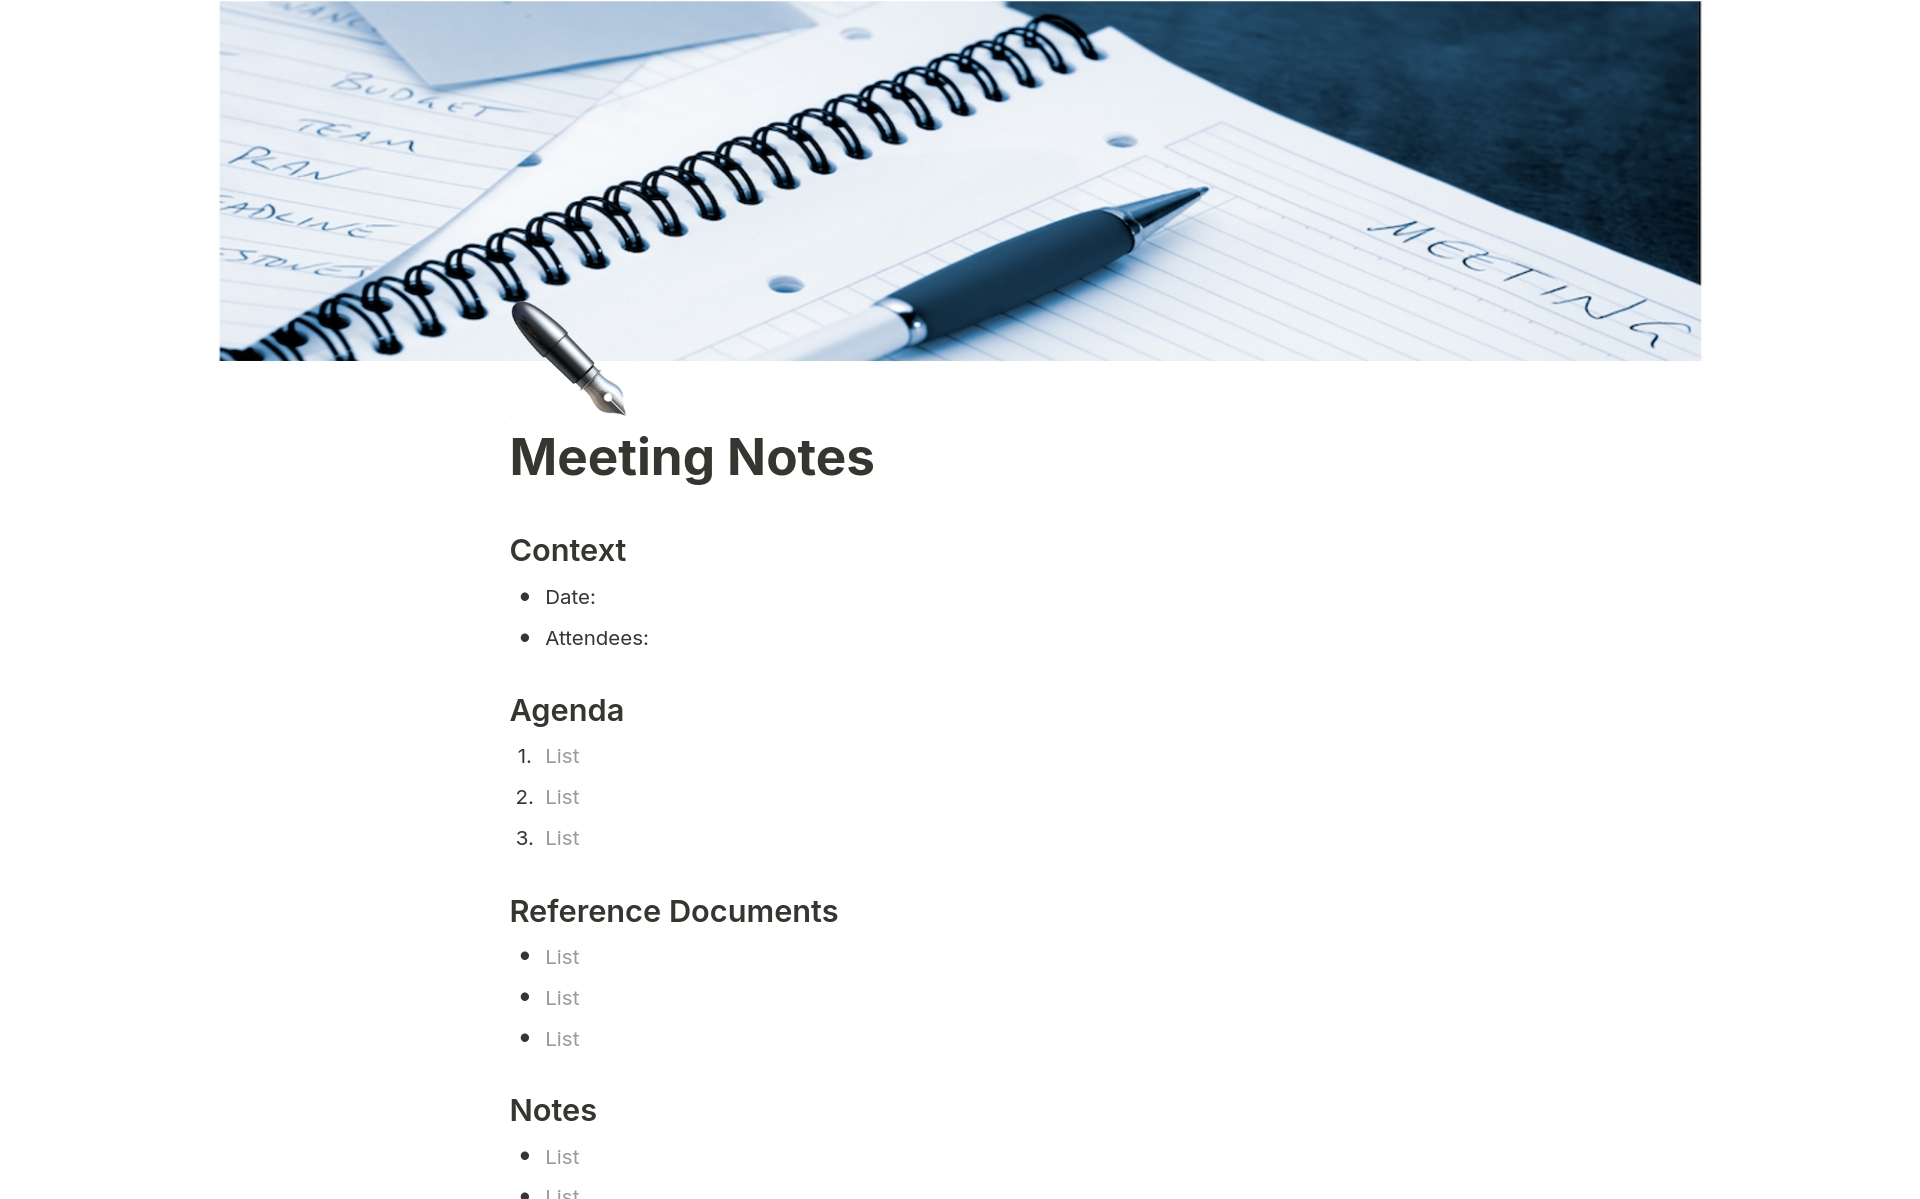 Vista previa de una plantilla para Simple Meeting Notes